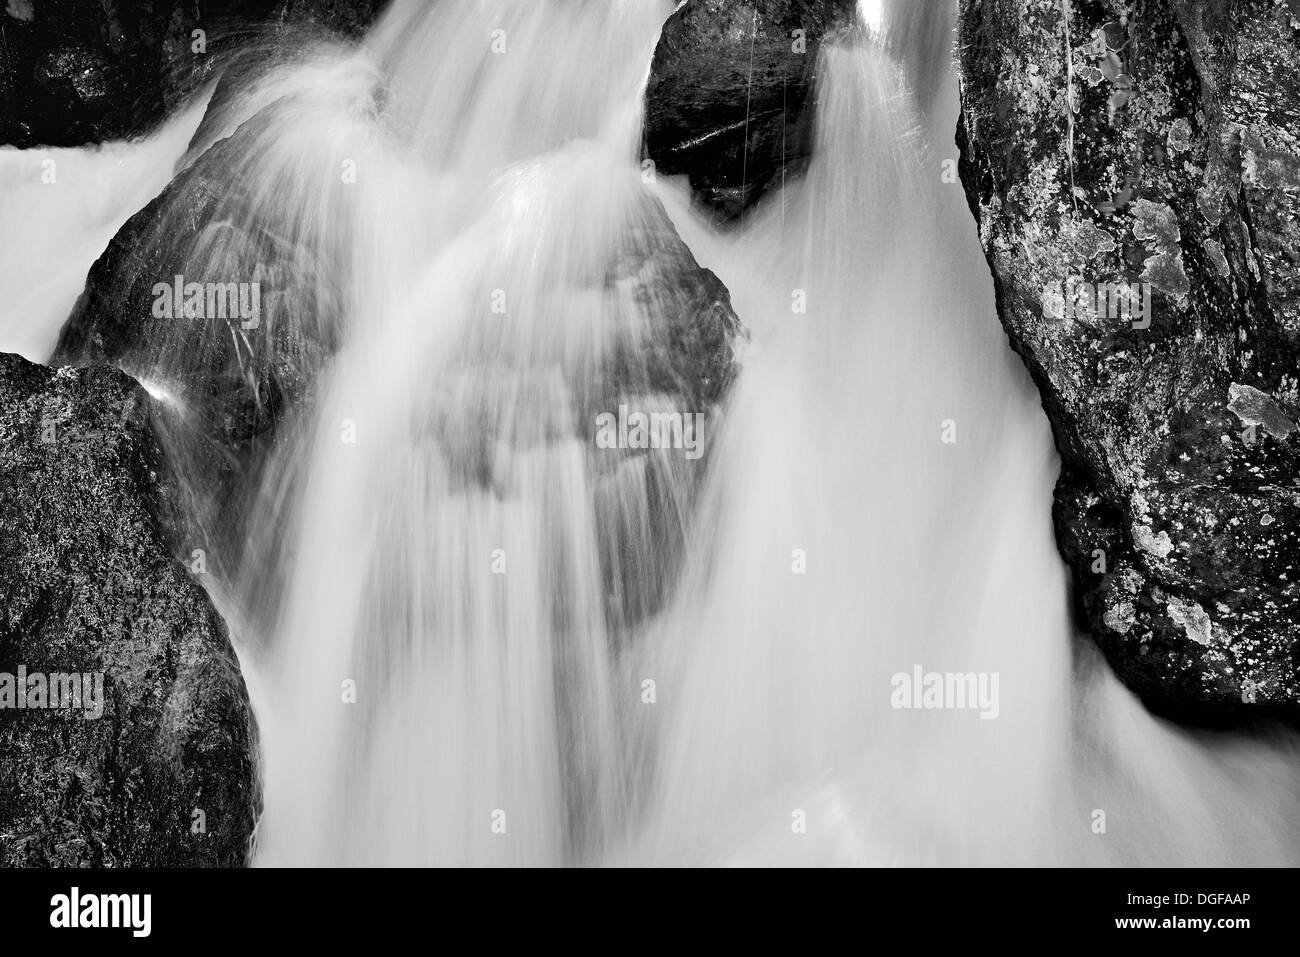 Argentina, Iguassu National Park: Black and White image showing individual cascade of Iguassu Falls Stock Photo